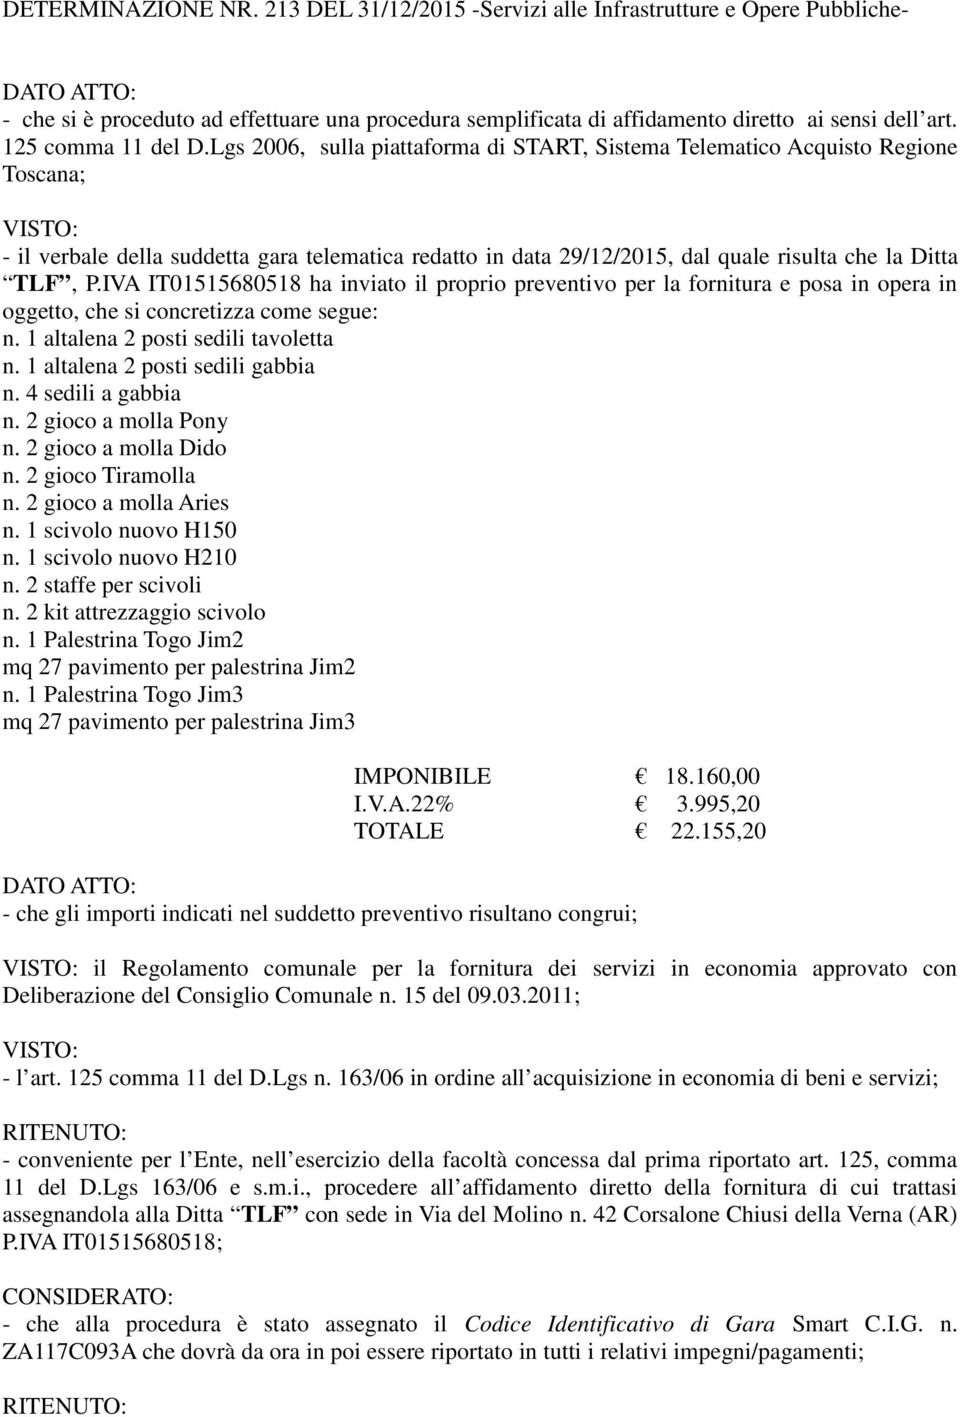 Lgs 2006, sulla piattaforma di START, Sistema Telematico Acquisto Regione Toscana; VISTO: - il verbale della suddetta gara telematica redatto in data 29/12/2015, dal quale risulta che la Ditta TLF, P.